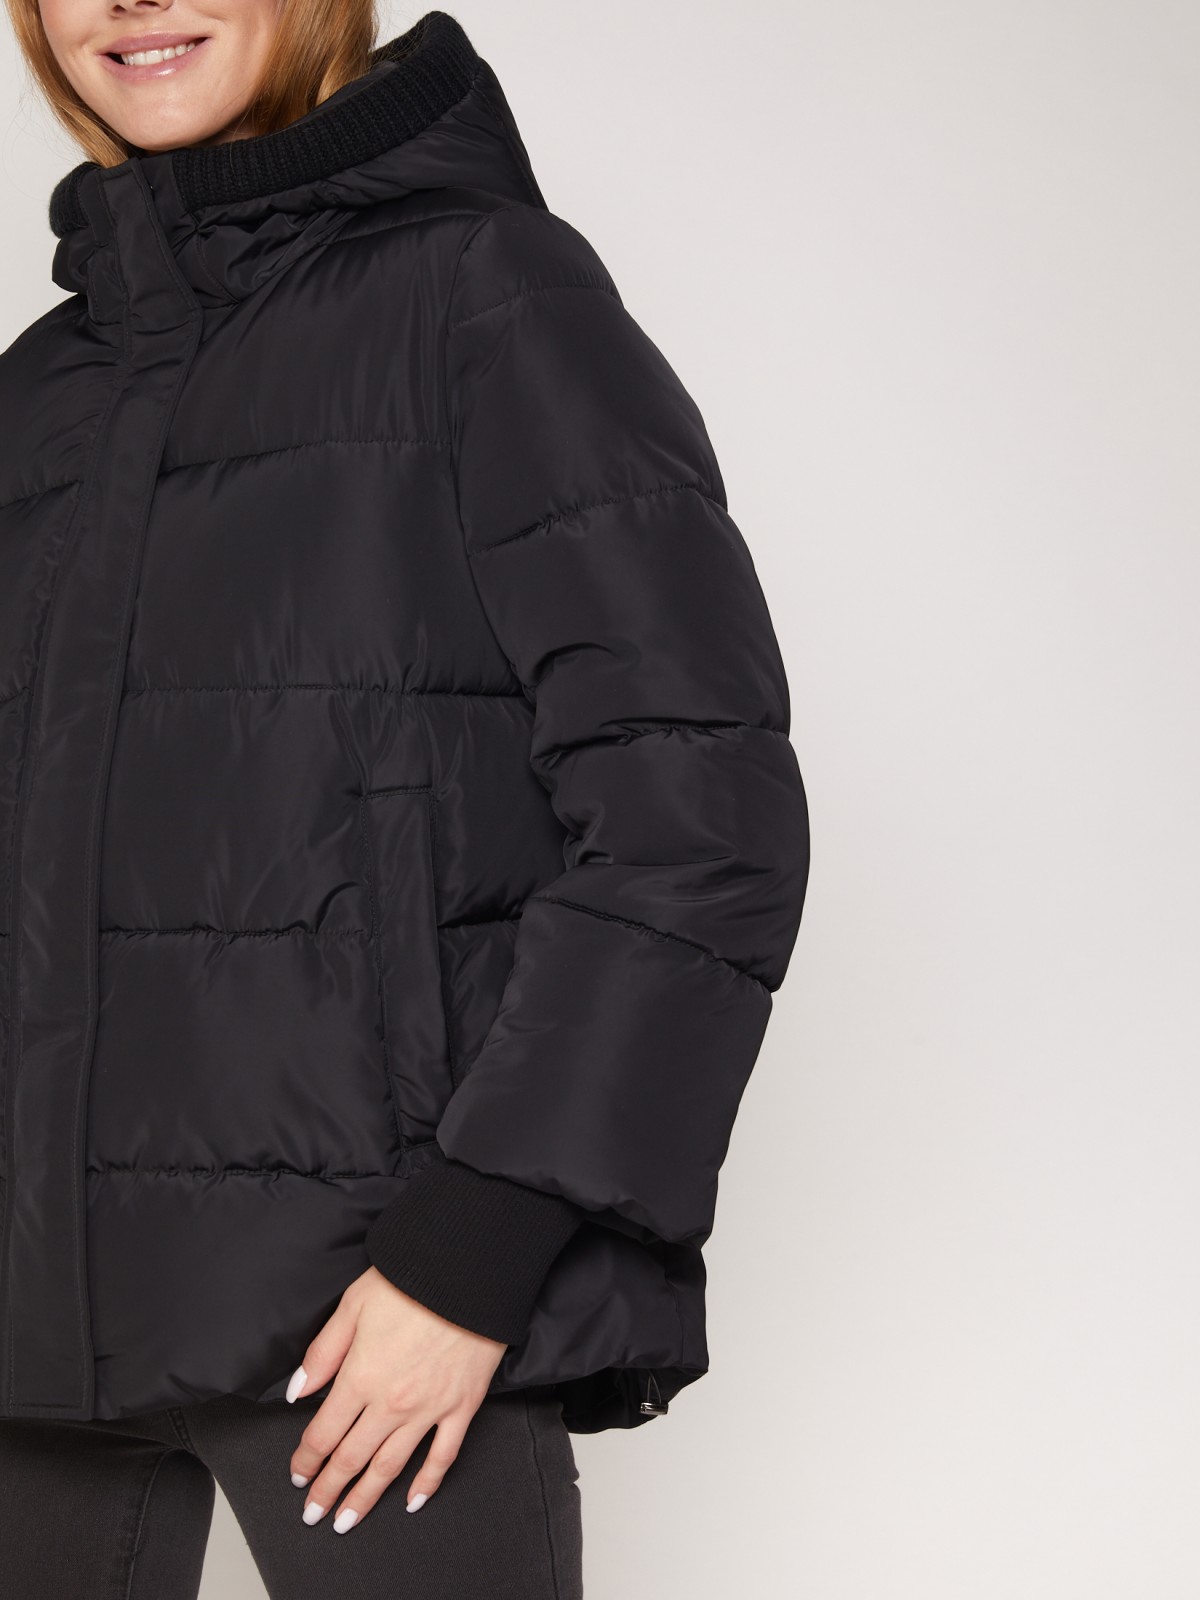 Тёплая стёганая куртка с капюшоном zolla 021335102264, цвет черный, размер S - фото 3